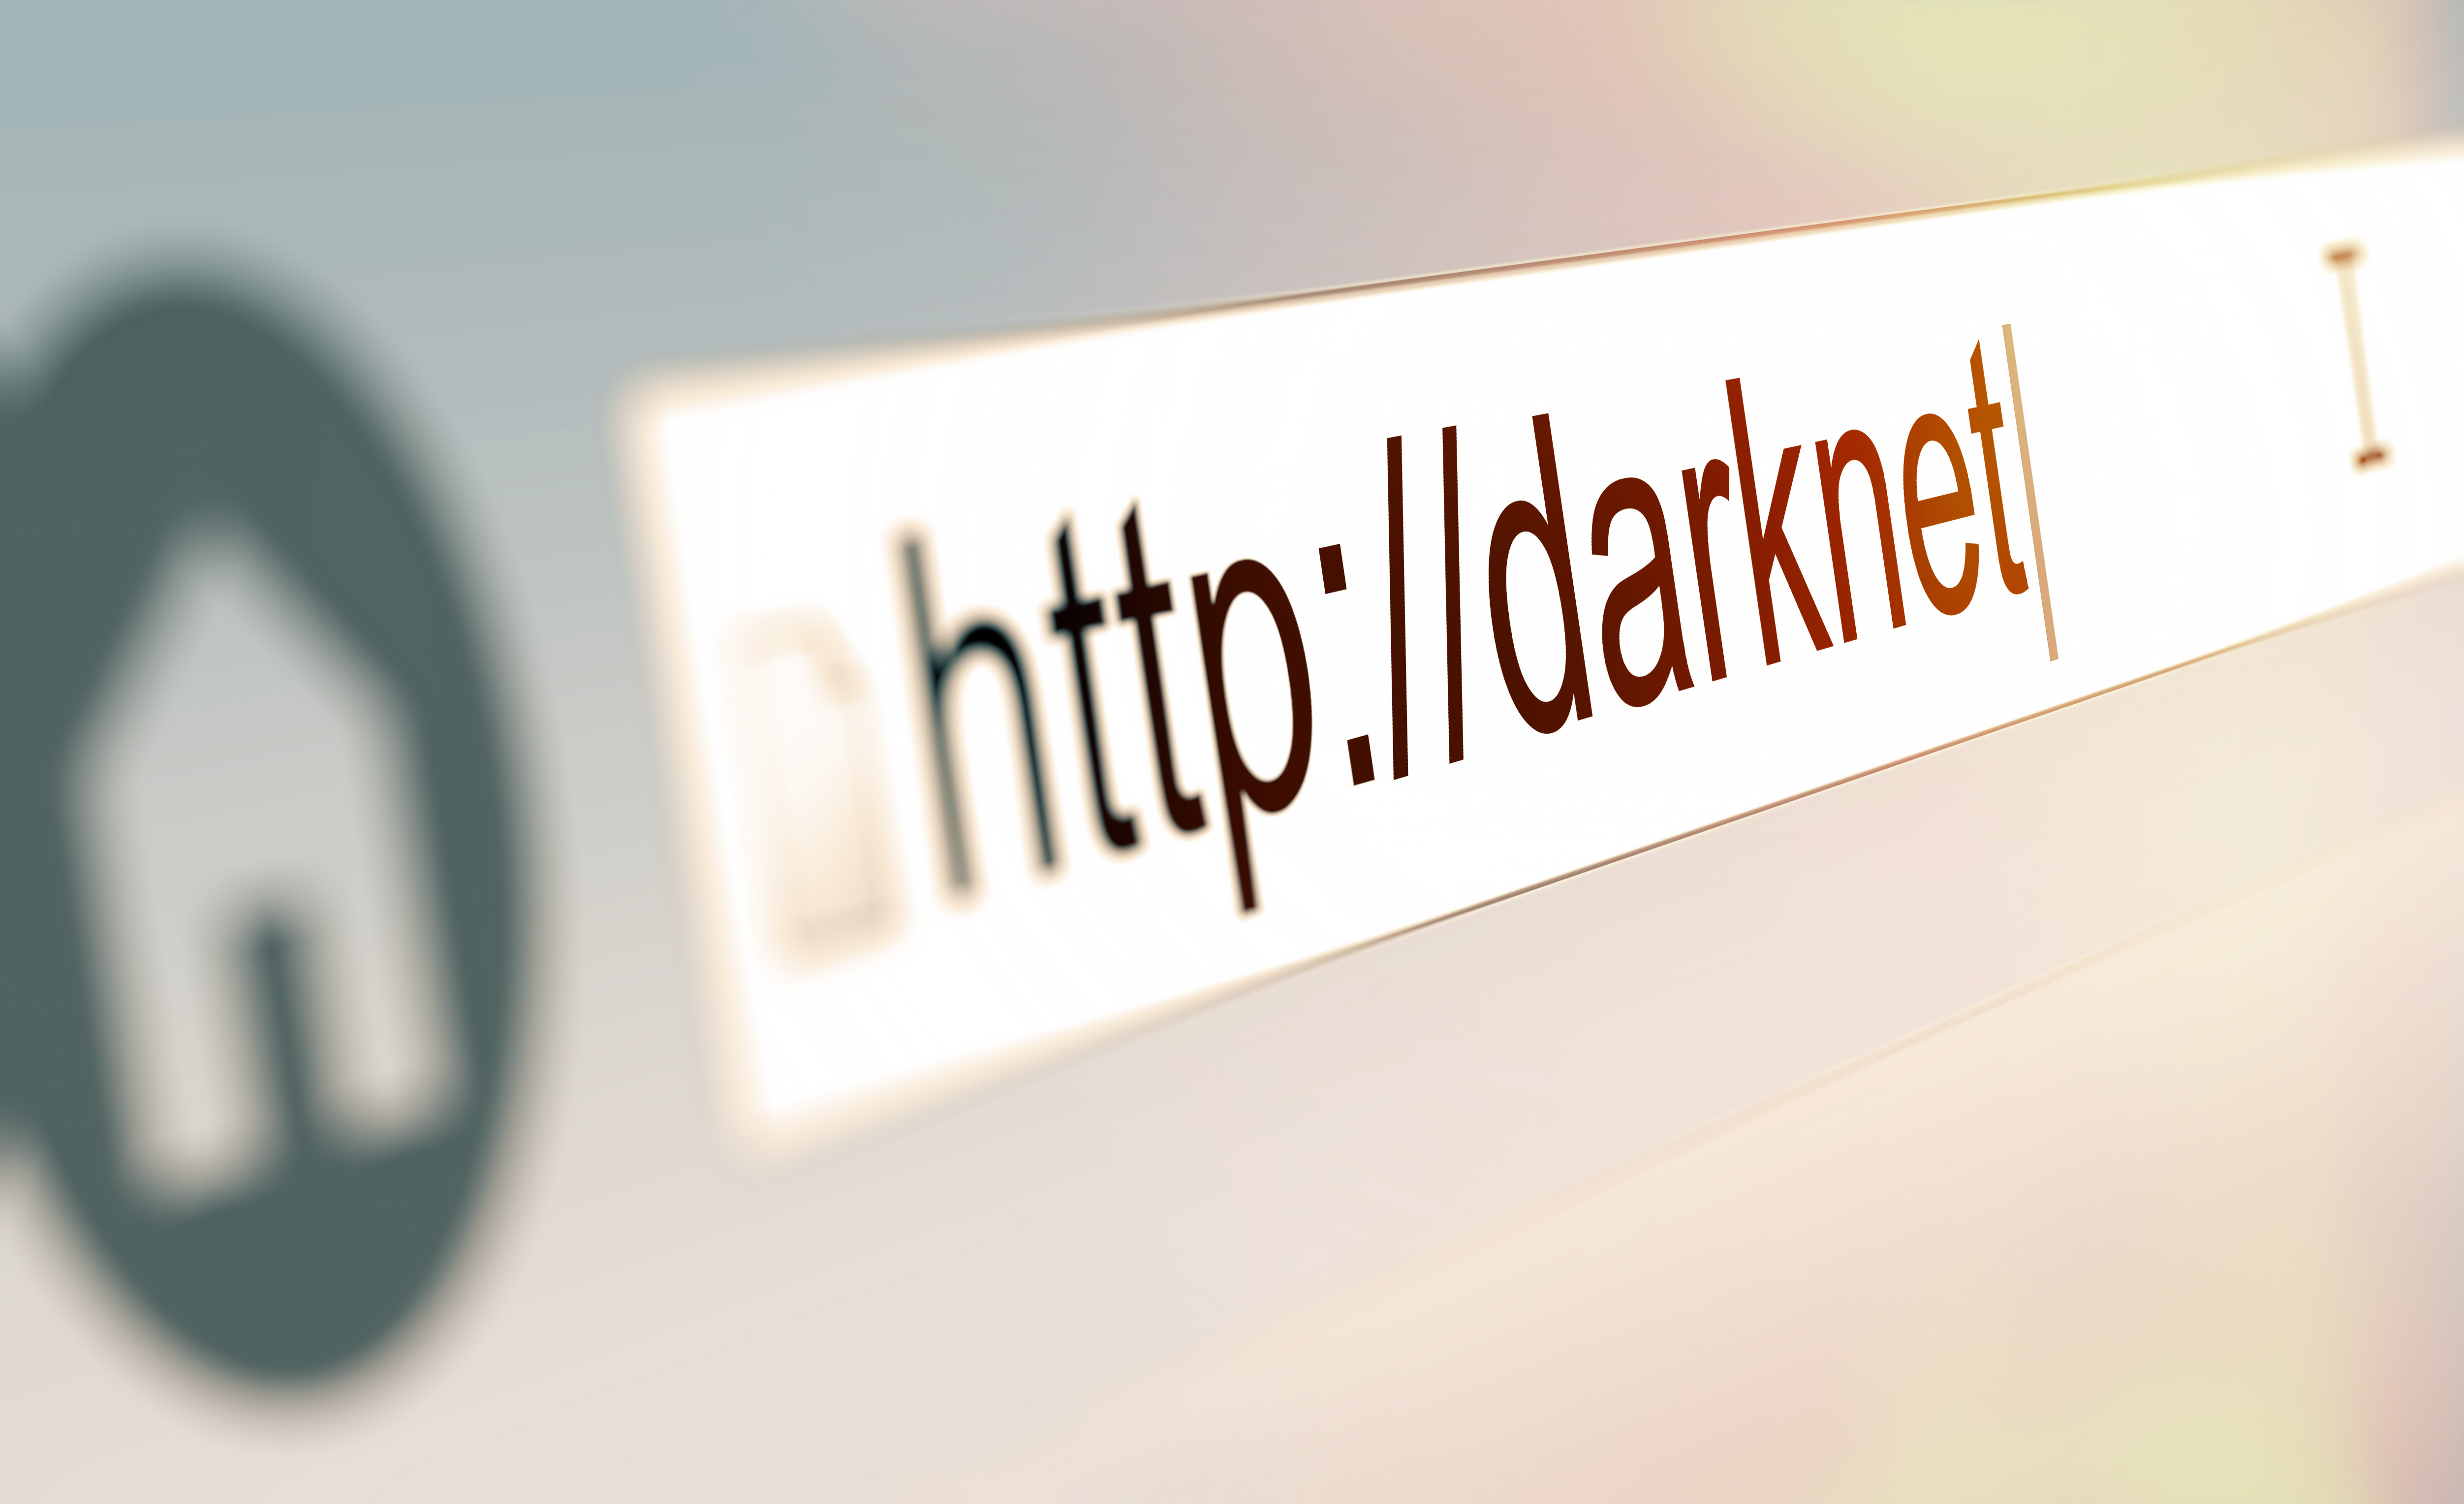 Darknet site